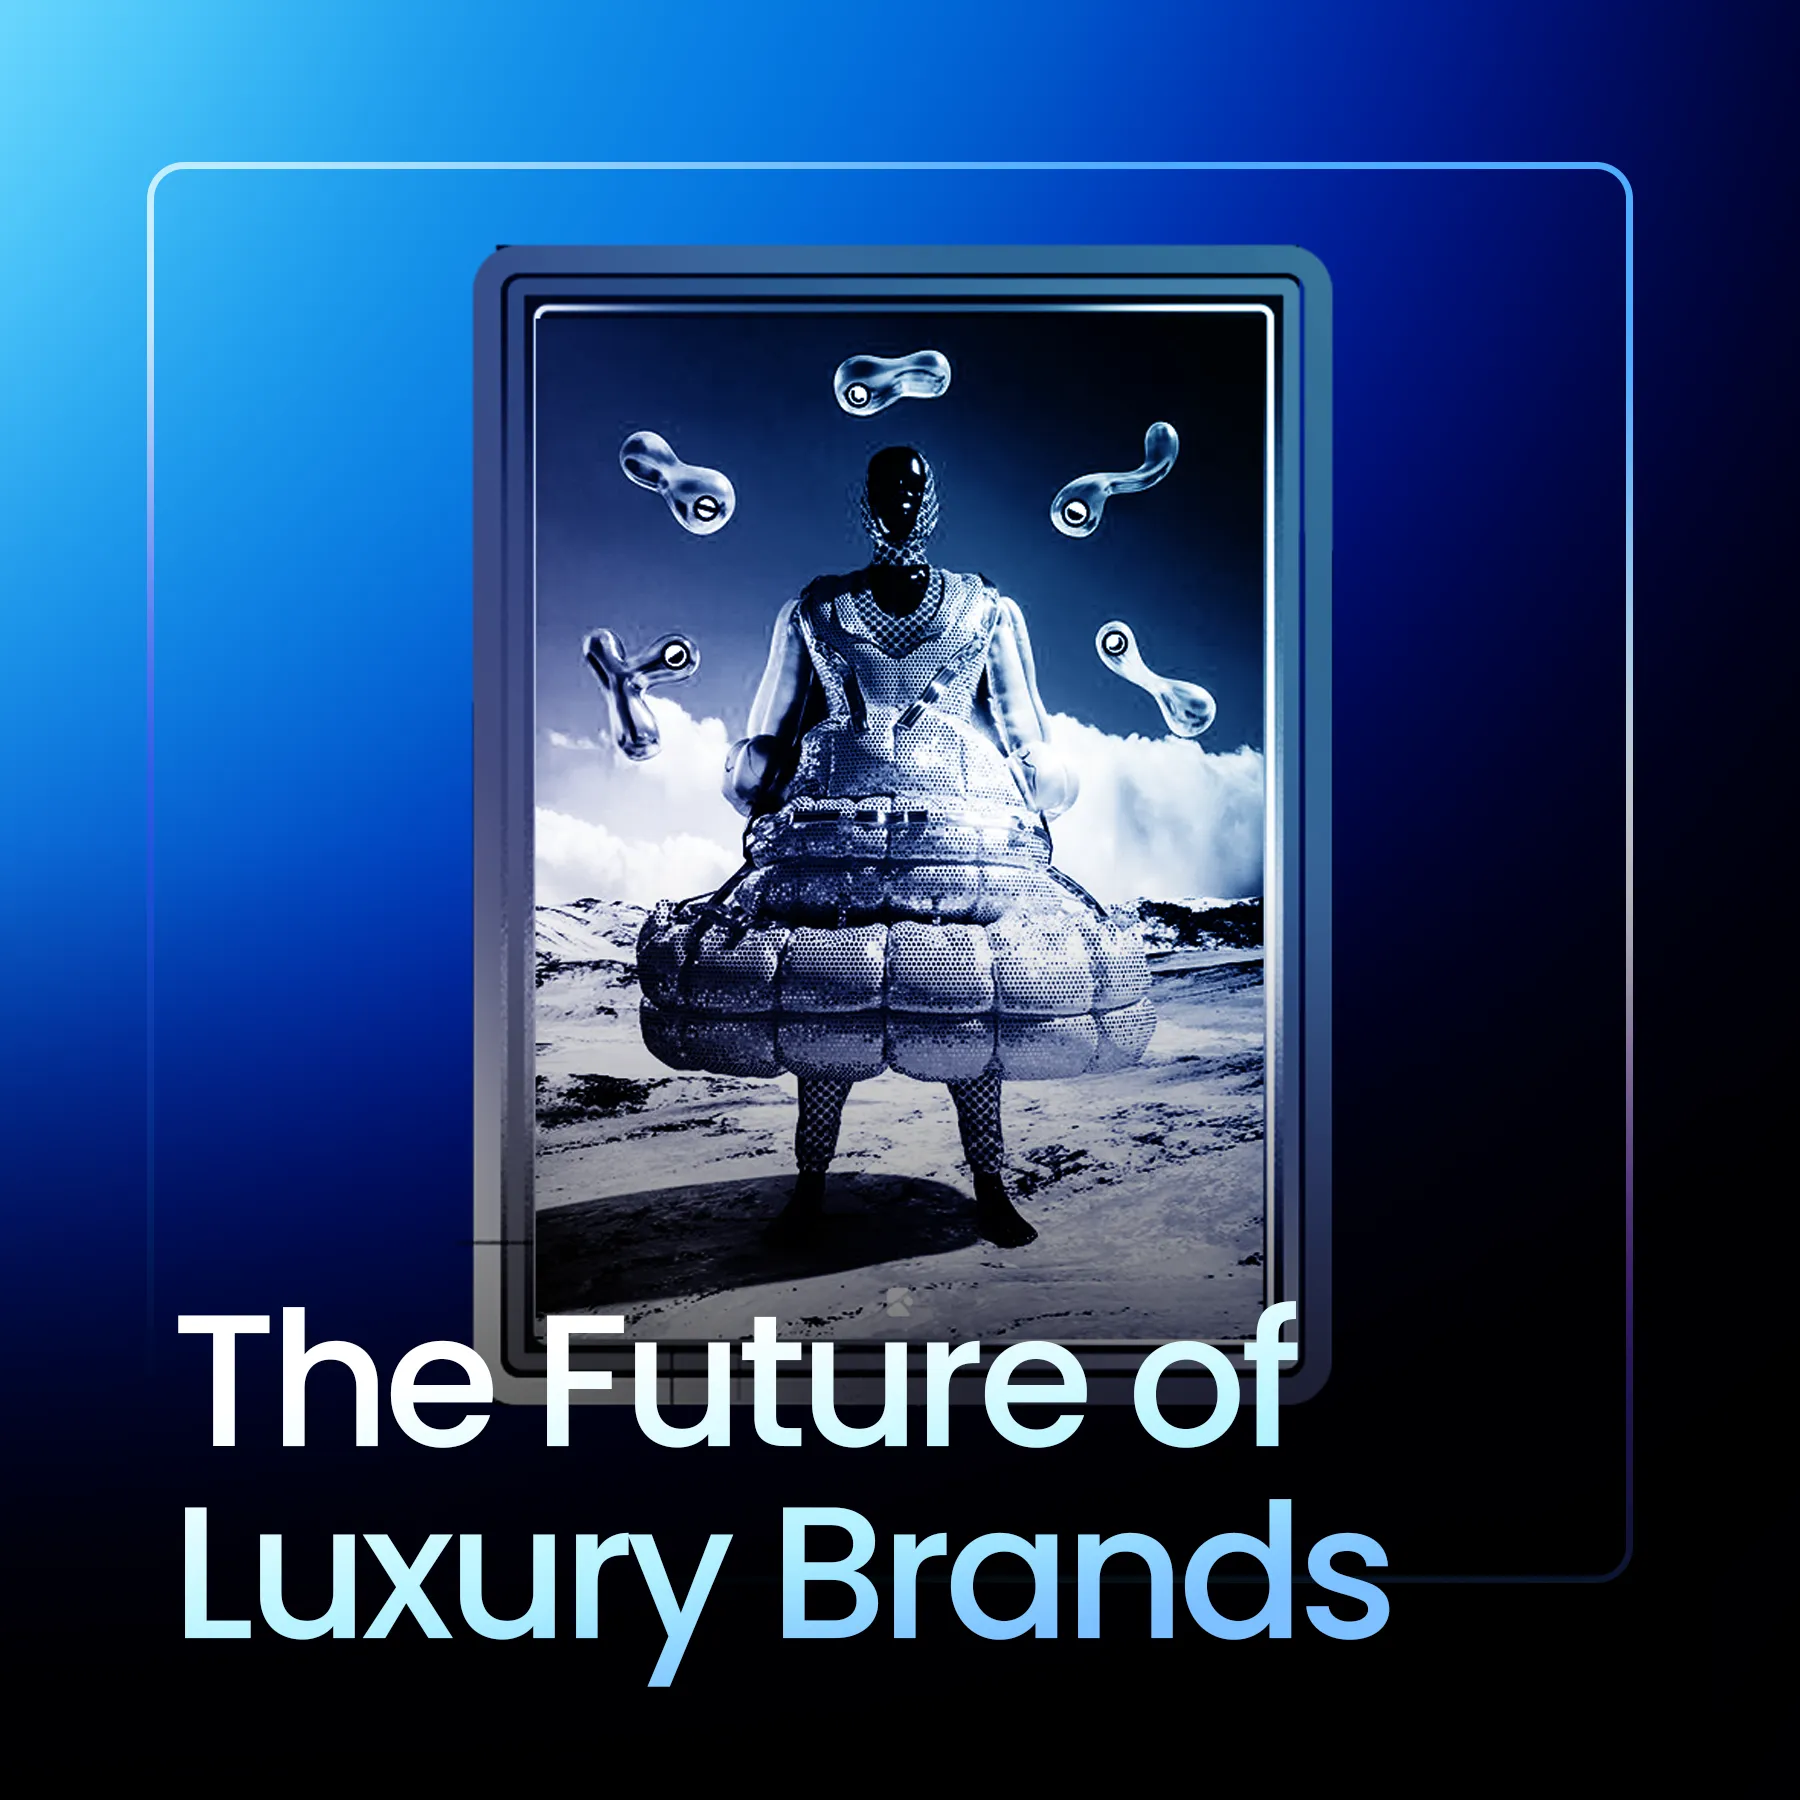 Prada Business Model Evolution and Future